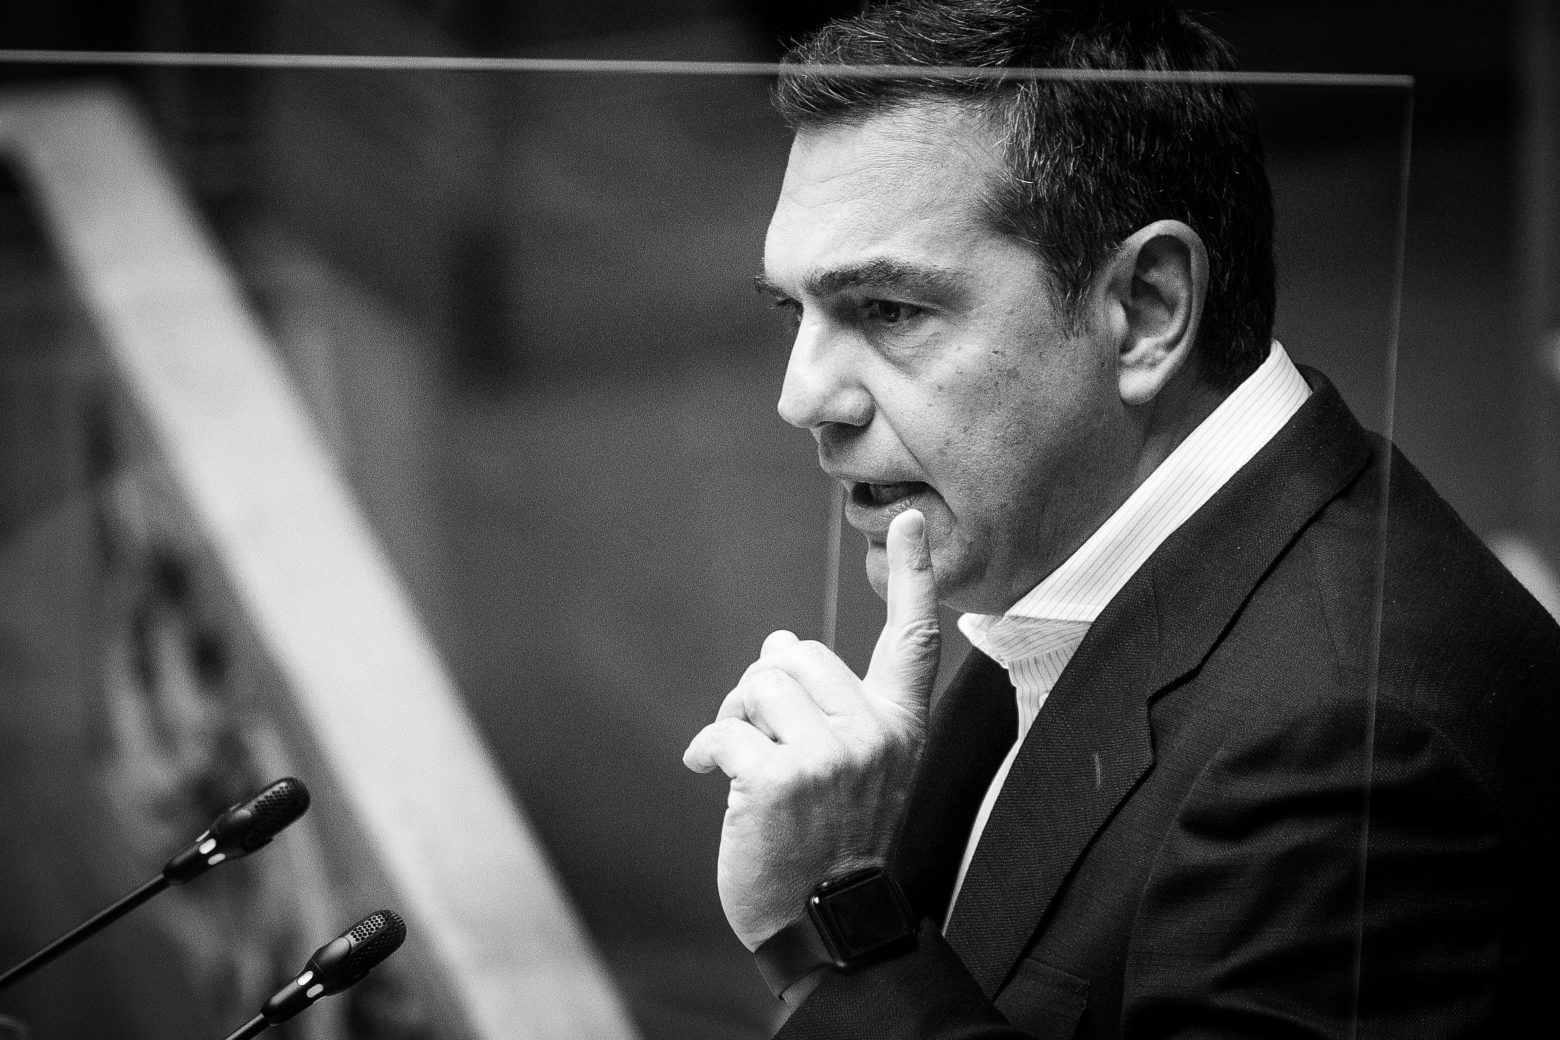 Τσίπρας: «Ο πρωθυπουργός κρύβεται πάντα στα δύσκολα» - Σφοδρή επίθεση στον Μητσοτάκη για την υπόθεση των υποκλοπών